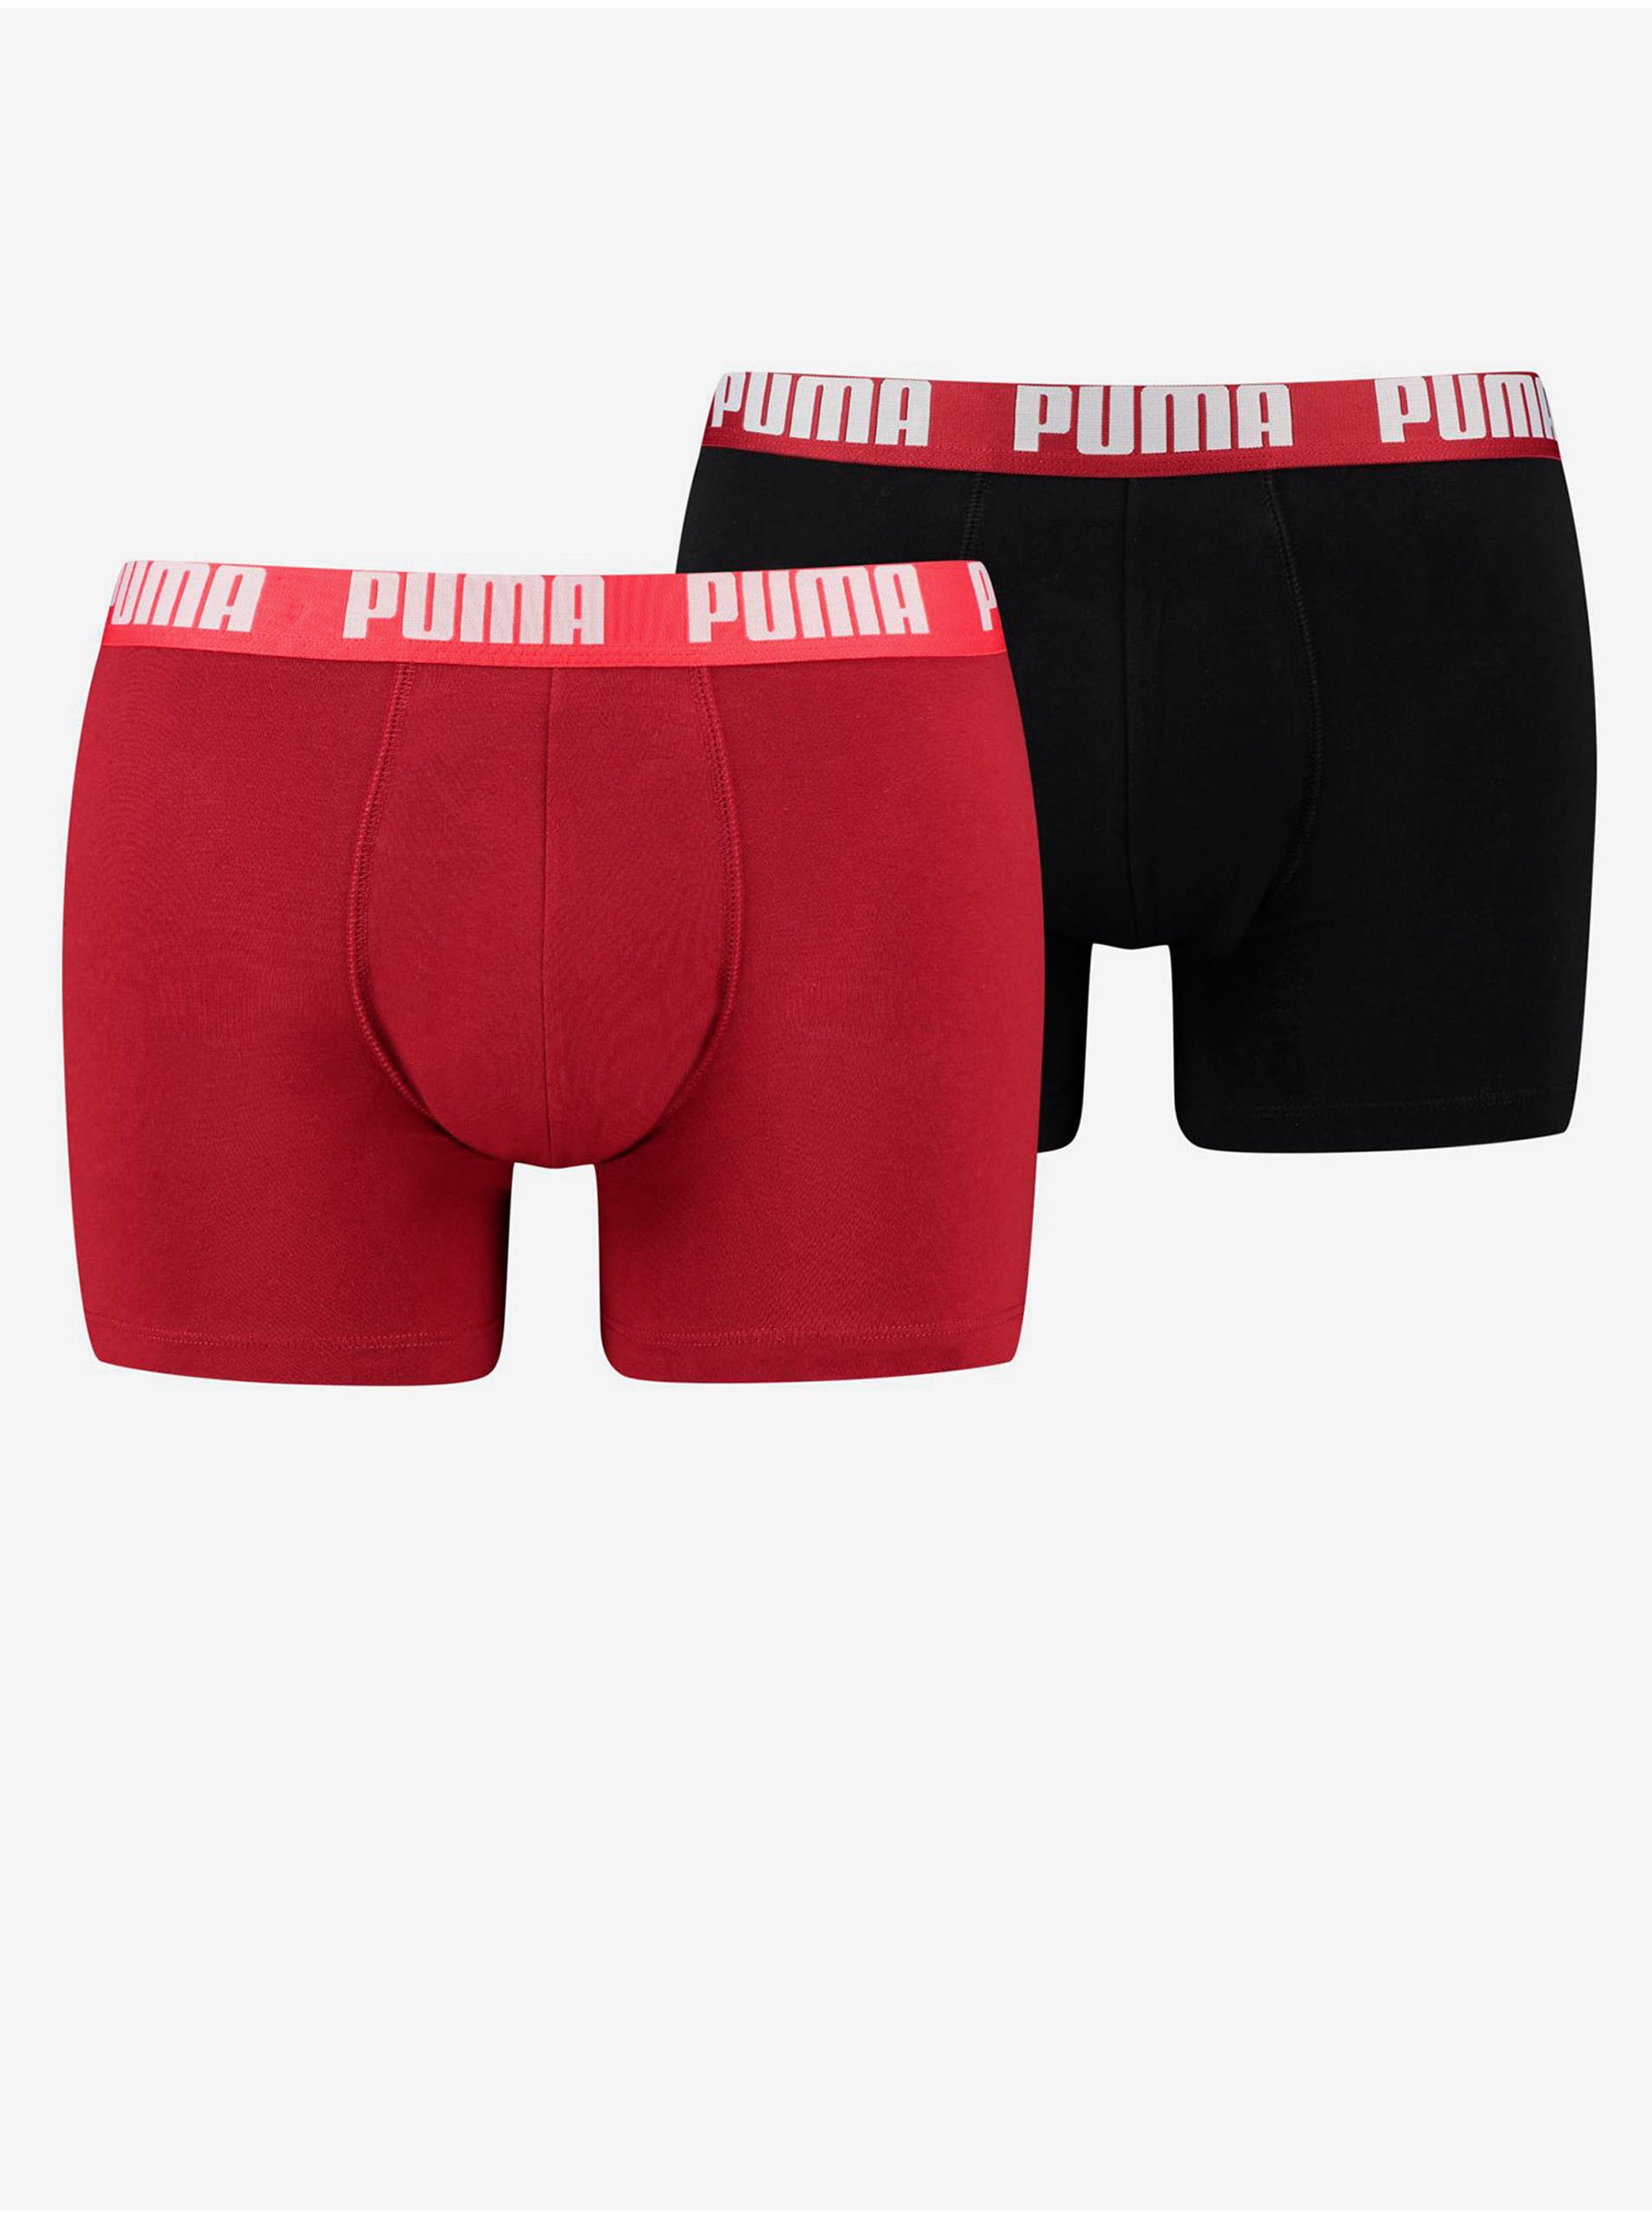 Sada dvoch pánskych boxeriek v čiernej a červenej farbe Puma